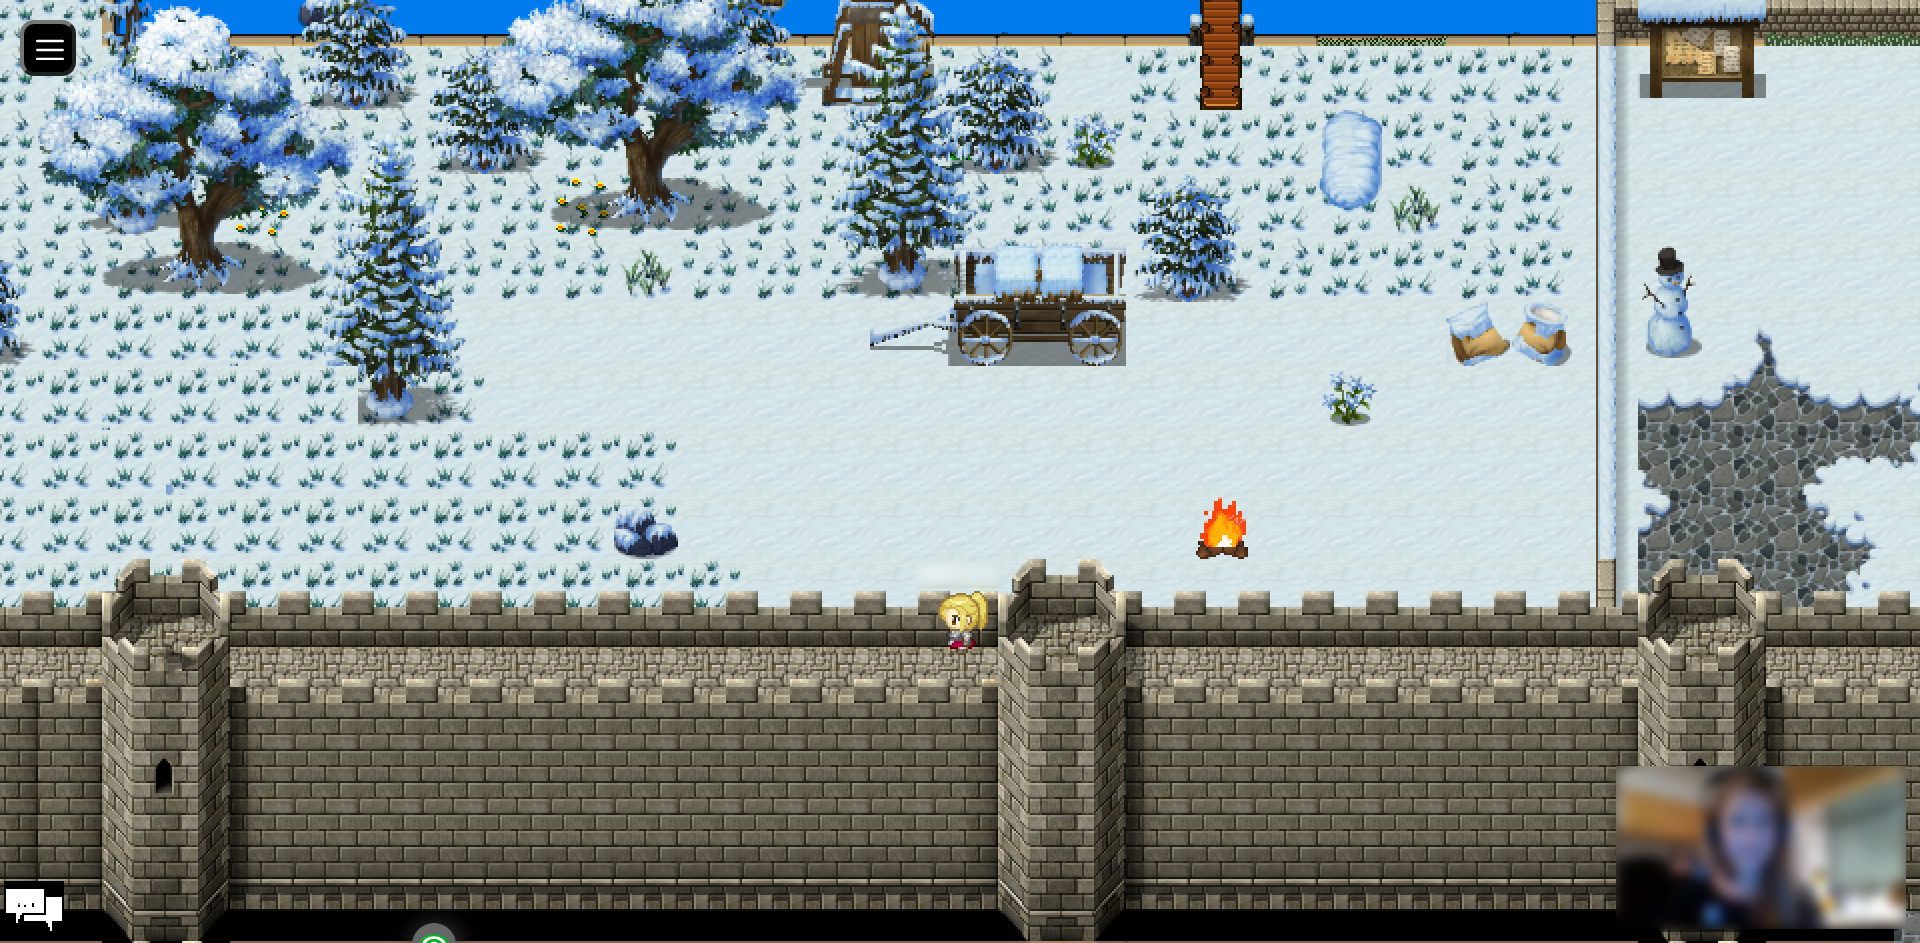 Der Screenshot zeigt im unteren Teil eine hohe Stadtmauer, auf der ein Avatar geht. Darüber befindet sich eine mit Schnee bedeckte Wiese mit einigen Bäumen und einem Holzkarren. Ein kleines Lagerfeuer brennt und ein Schneemann steht auf einem angrenzenden Platz.